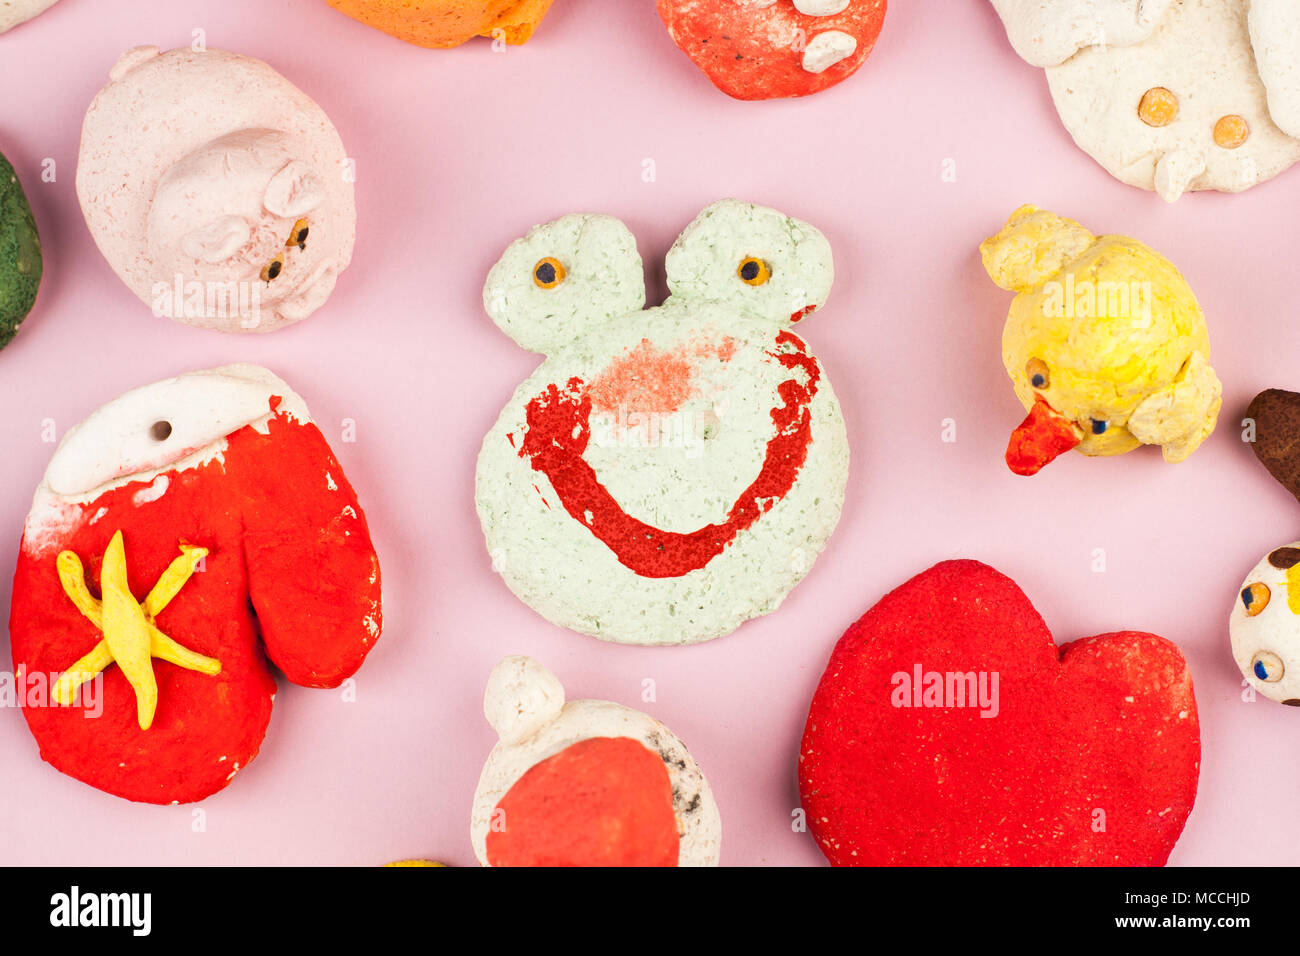 Kinder Kunsthandwerk aus gesalzenem Teig - verschiedene Tiere, Herzen, Blumen mit Farben bemalt Stockfoto